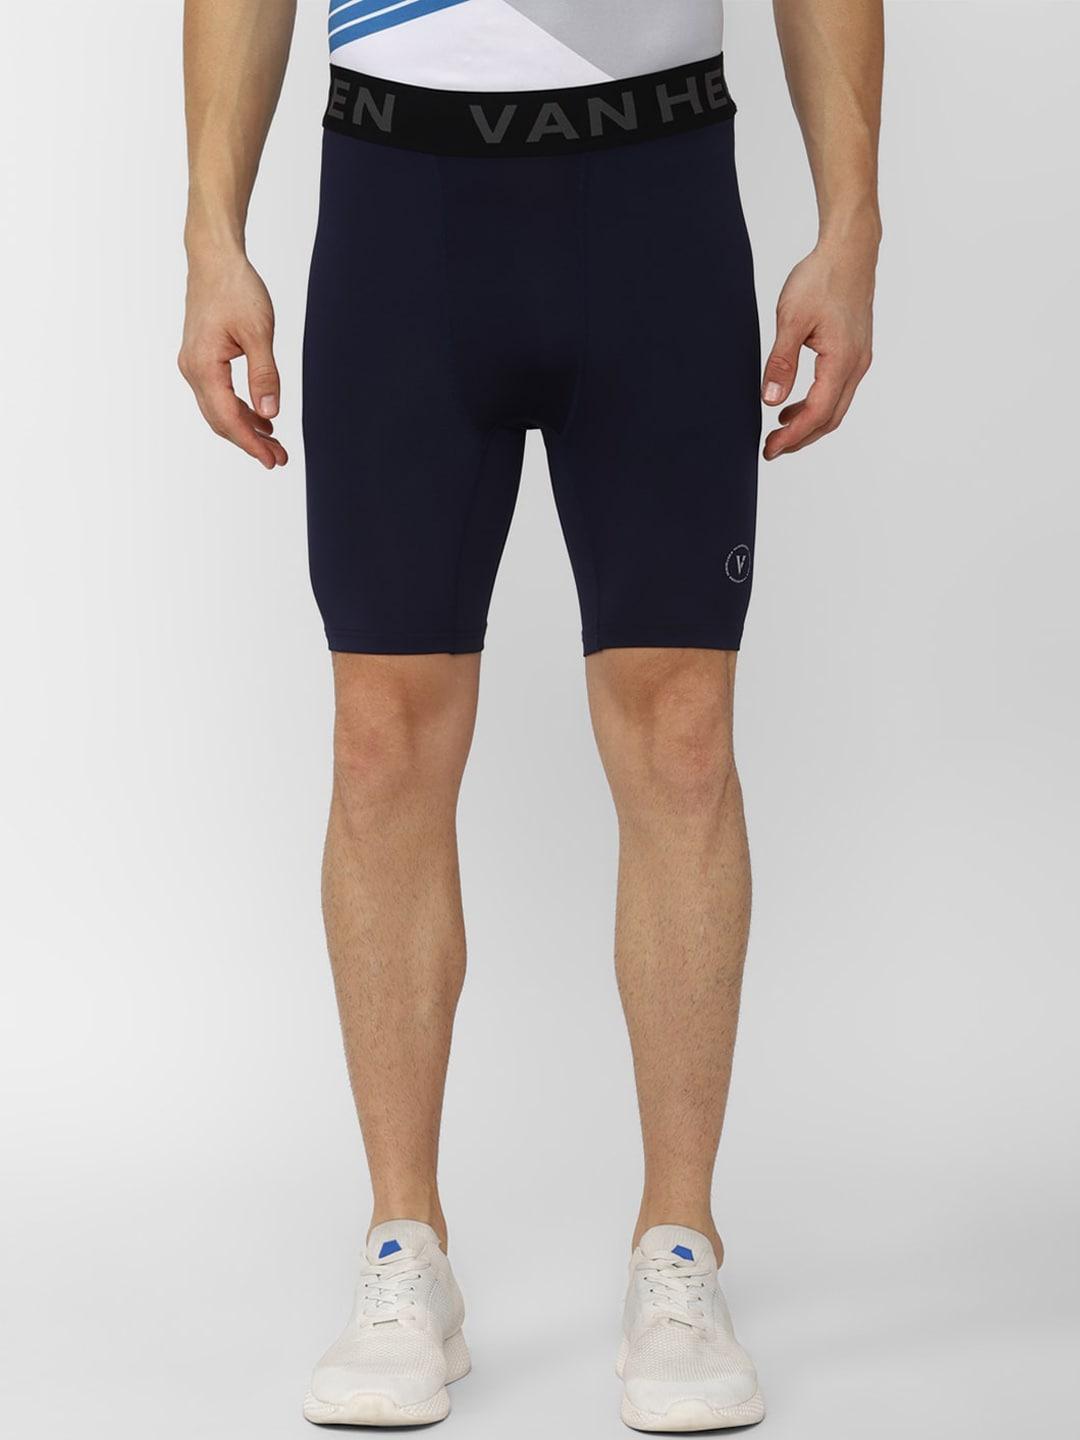 Van Heusen Flex Men Navy Blue Sports Shorts